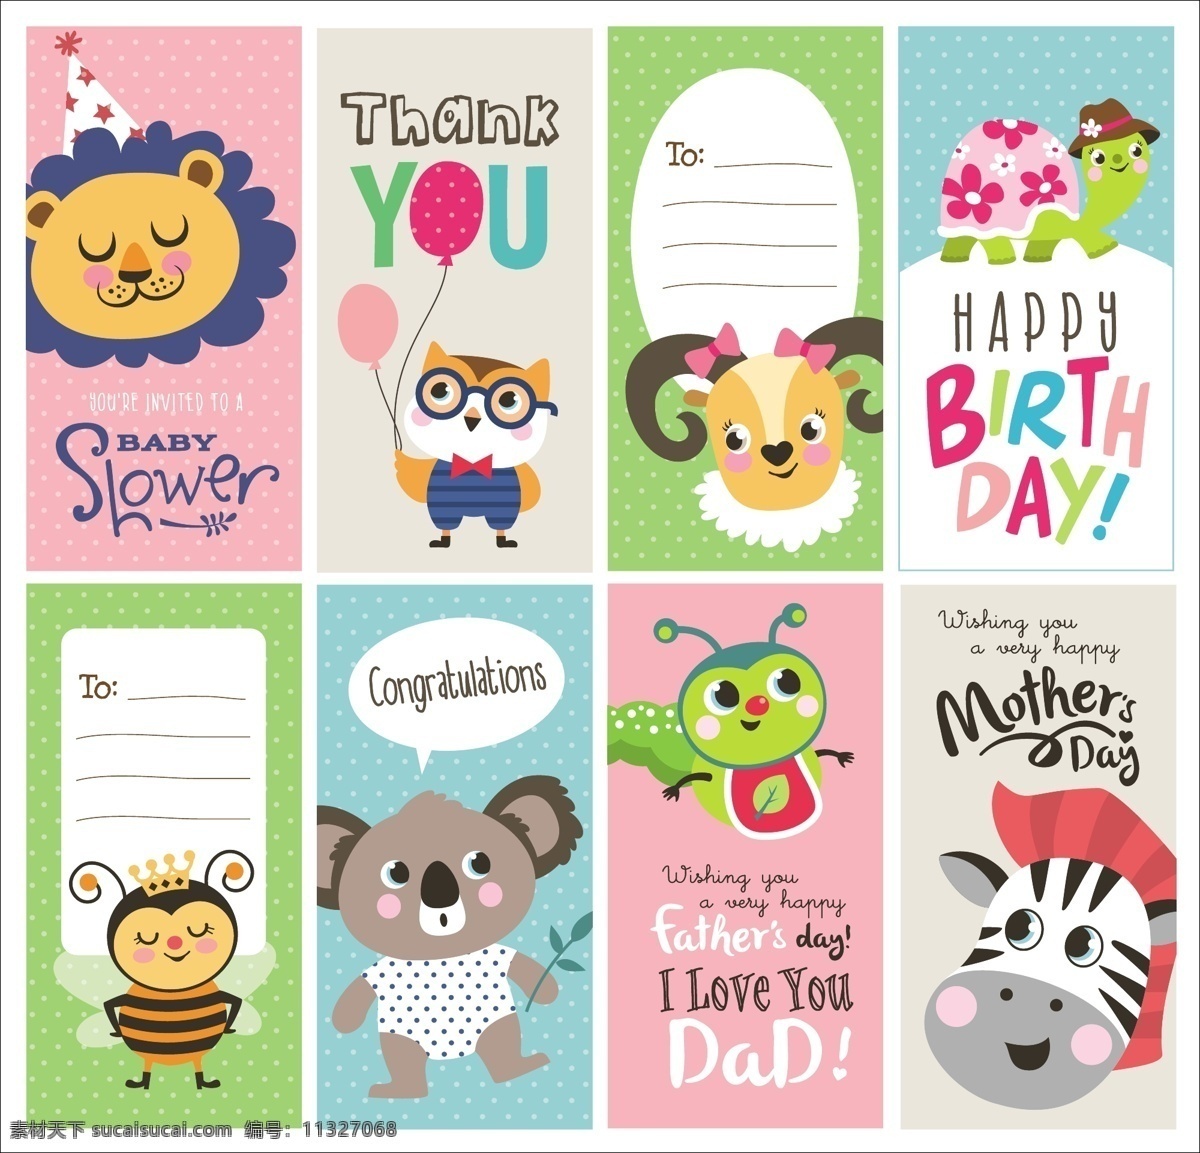 宝宝 儿童 生日 满月 周岁 天 邀请 卡片 婴儿 卡通 动物 矢量 手绘 可爱 贺卡